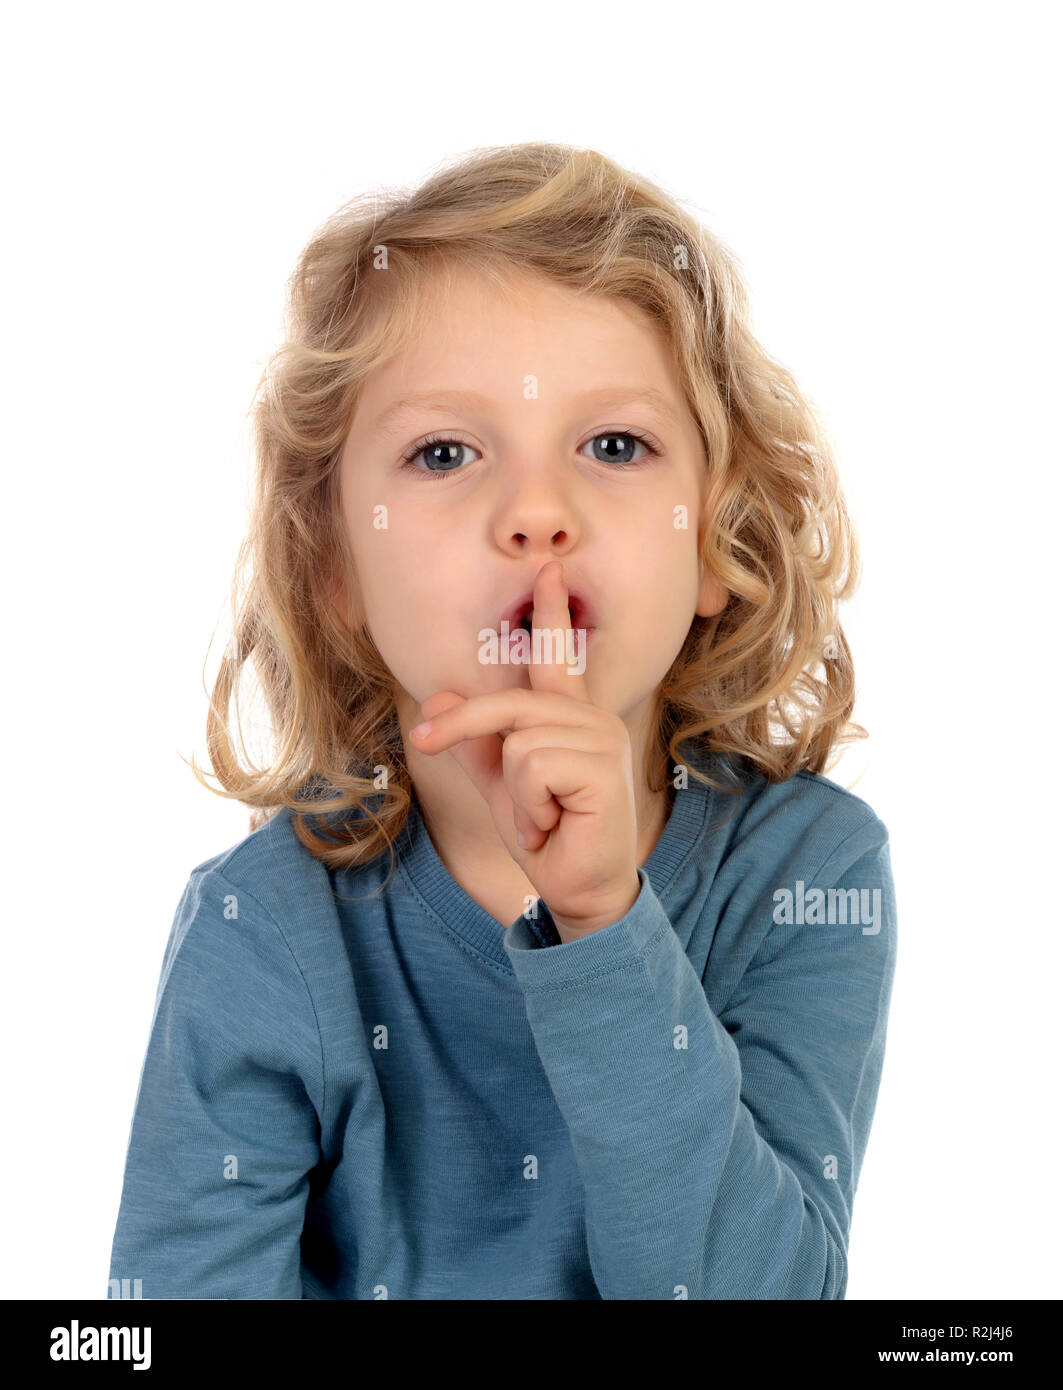 Bambino piccolo putting indice per labbra come segno di silenzio, isolato su sfondo bianco Foto Stock